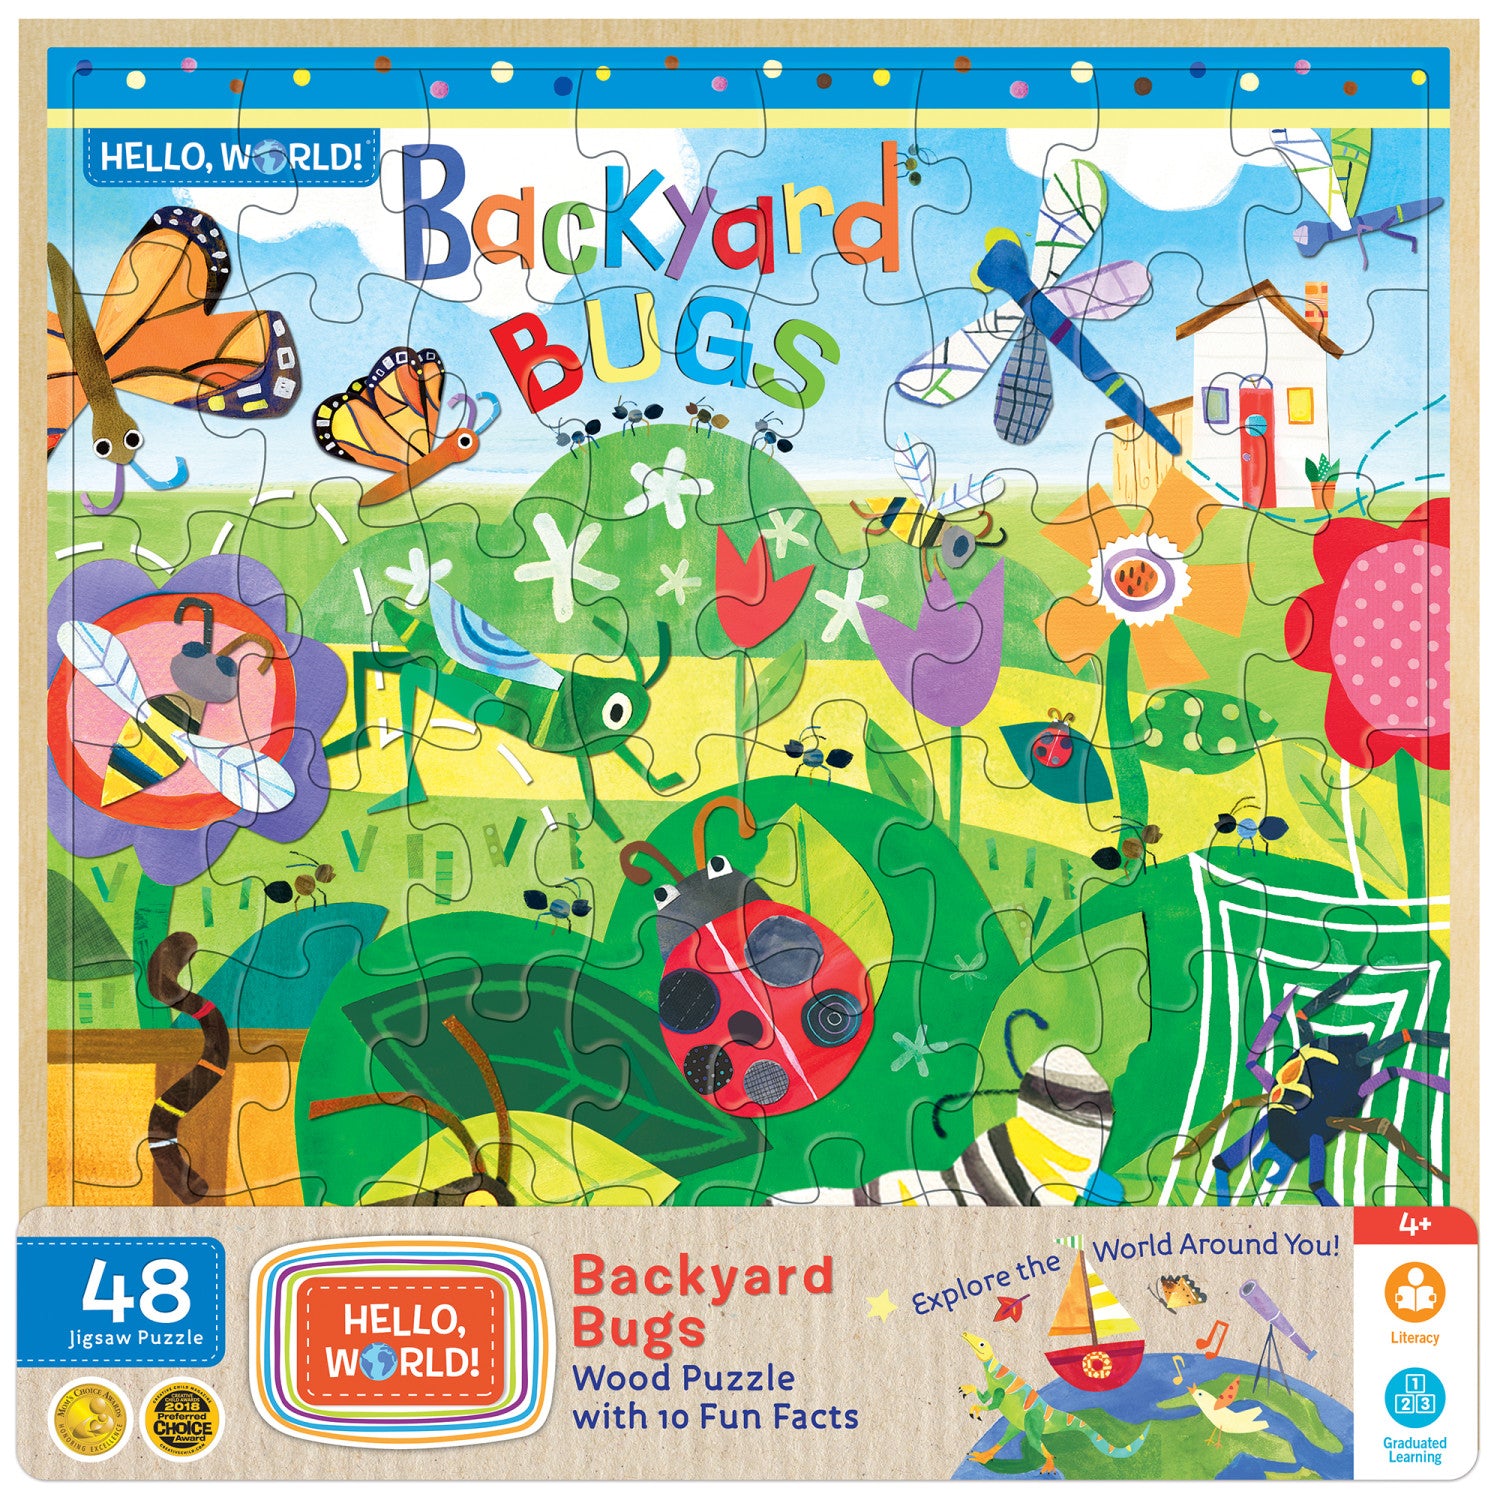 Hello, World! - Backyard Bugs 48 Piece Wood Jigsaw Puzzle